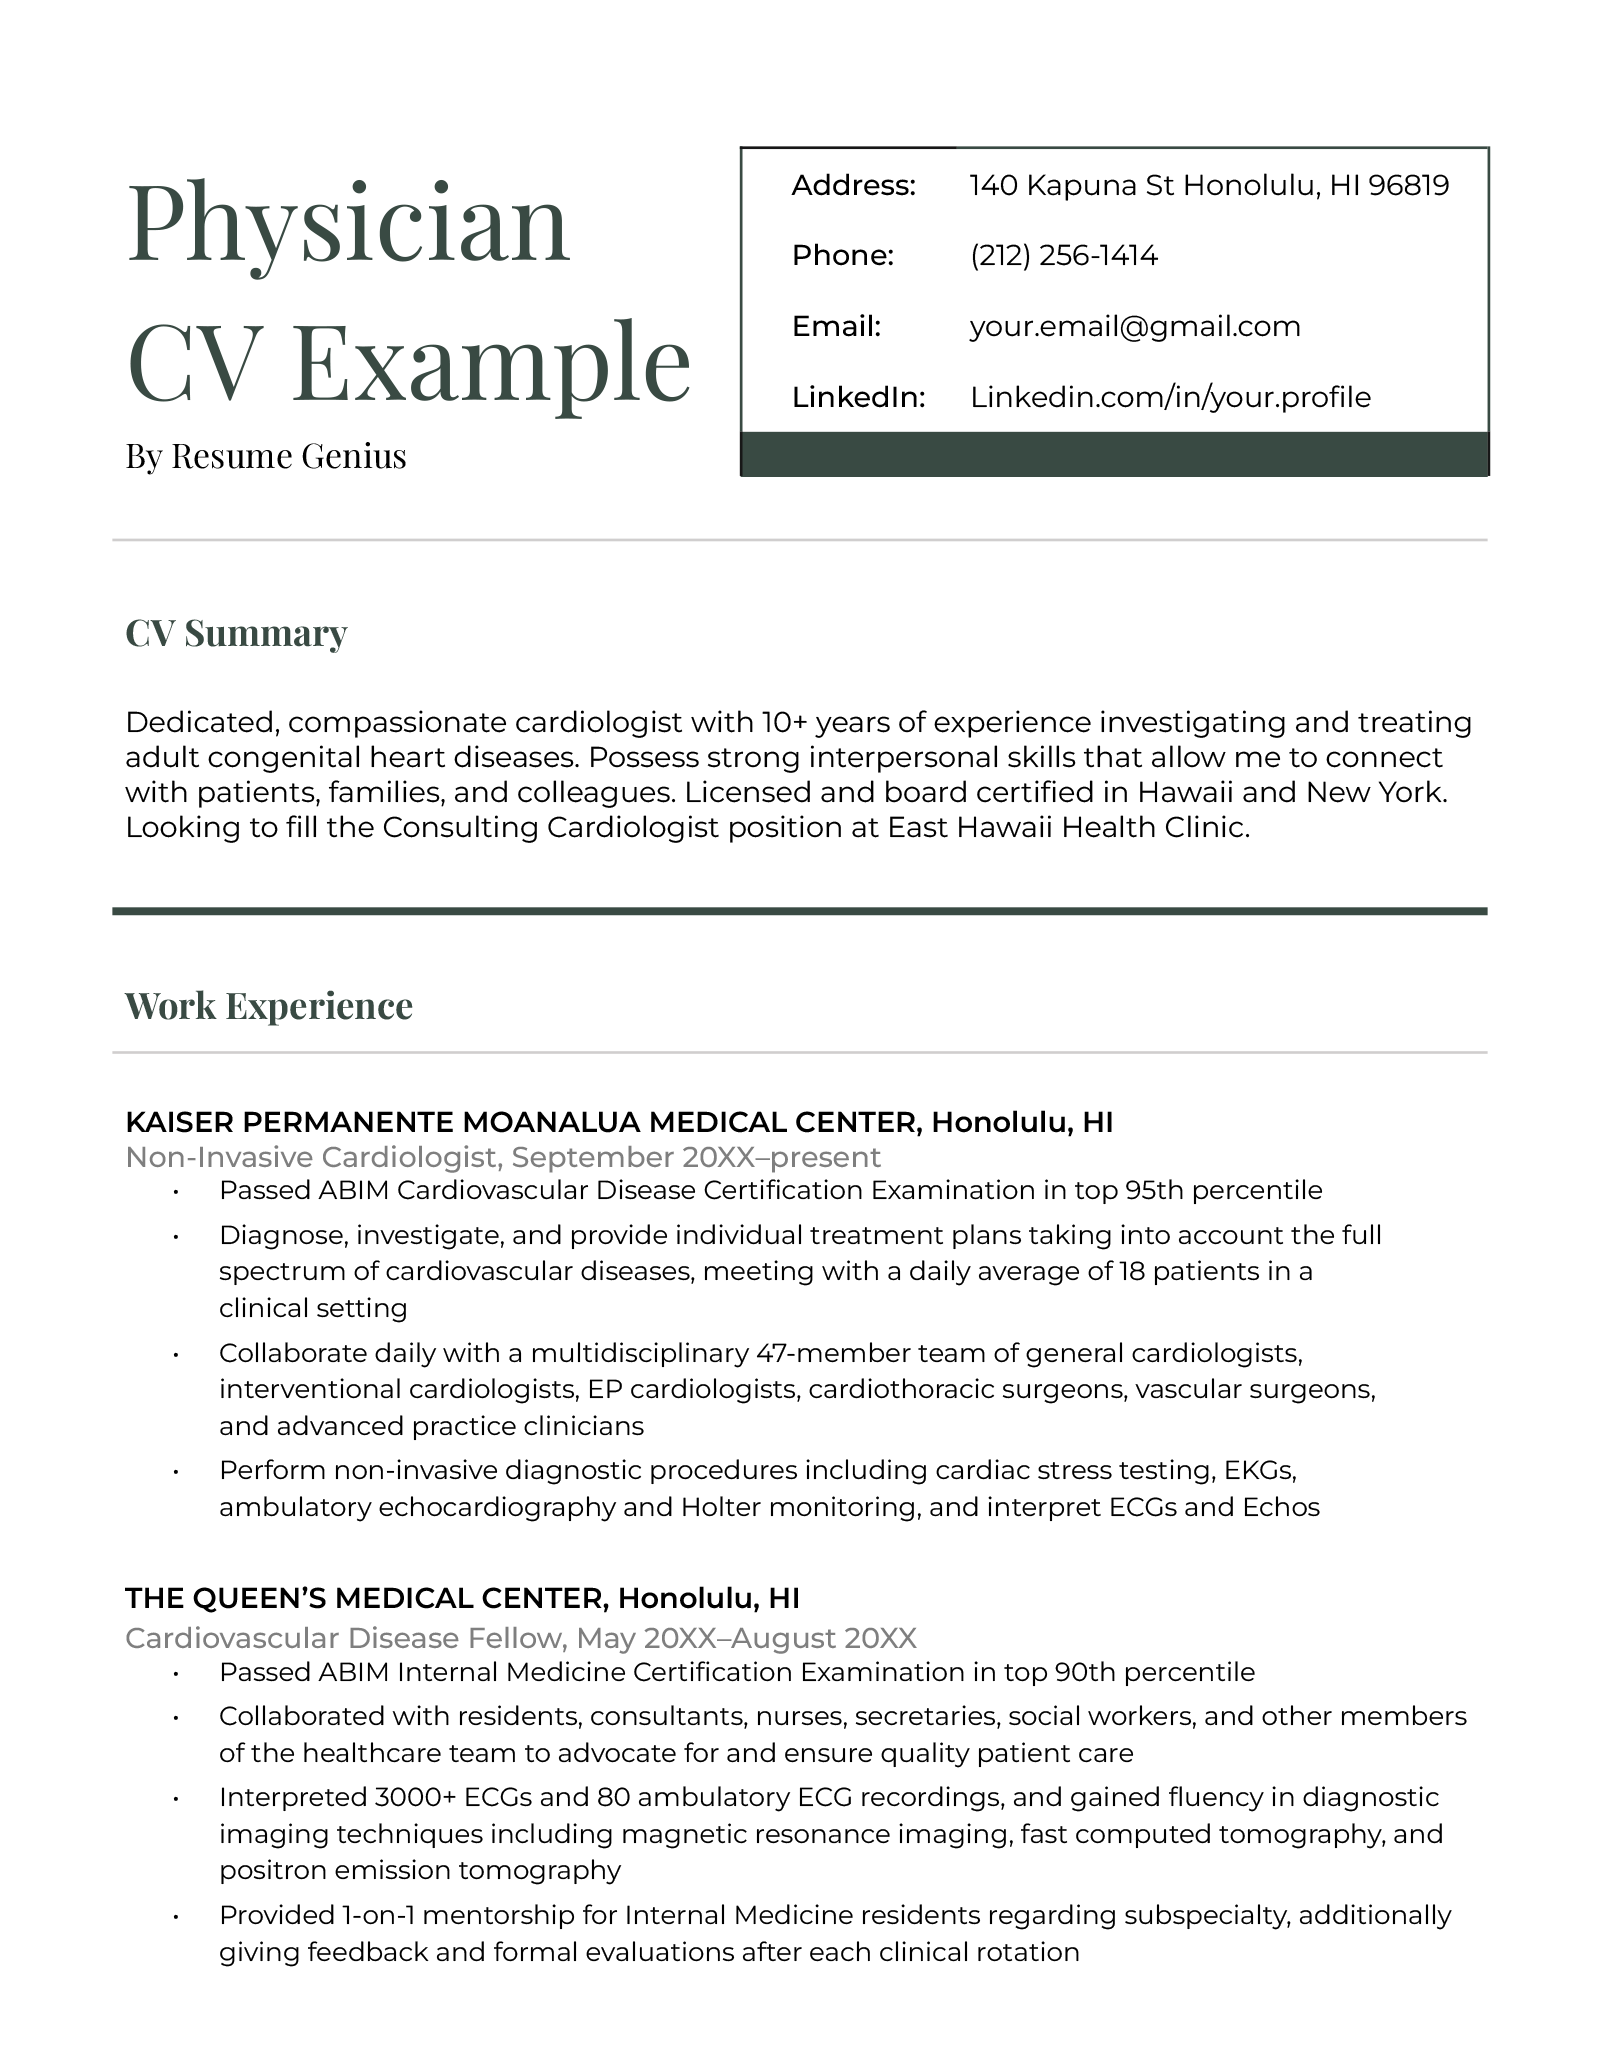 Physician CV Example Template